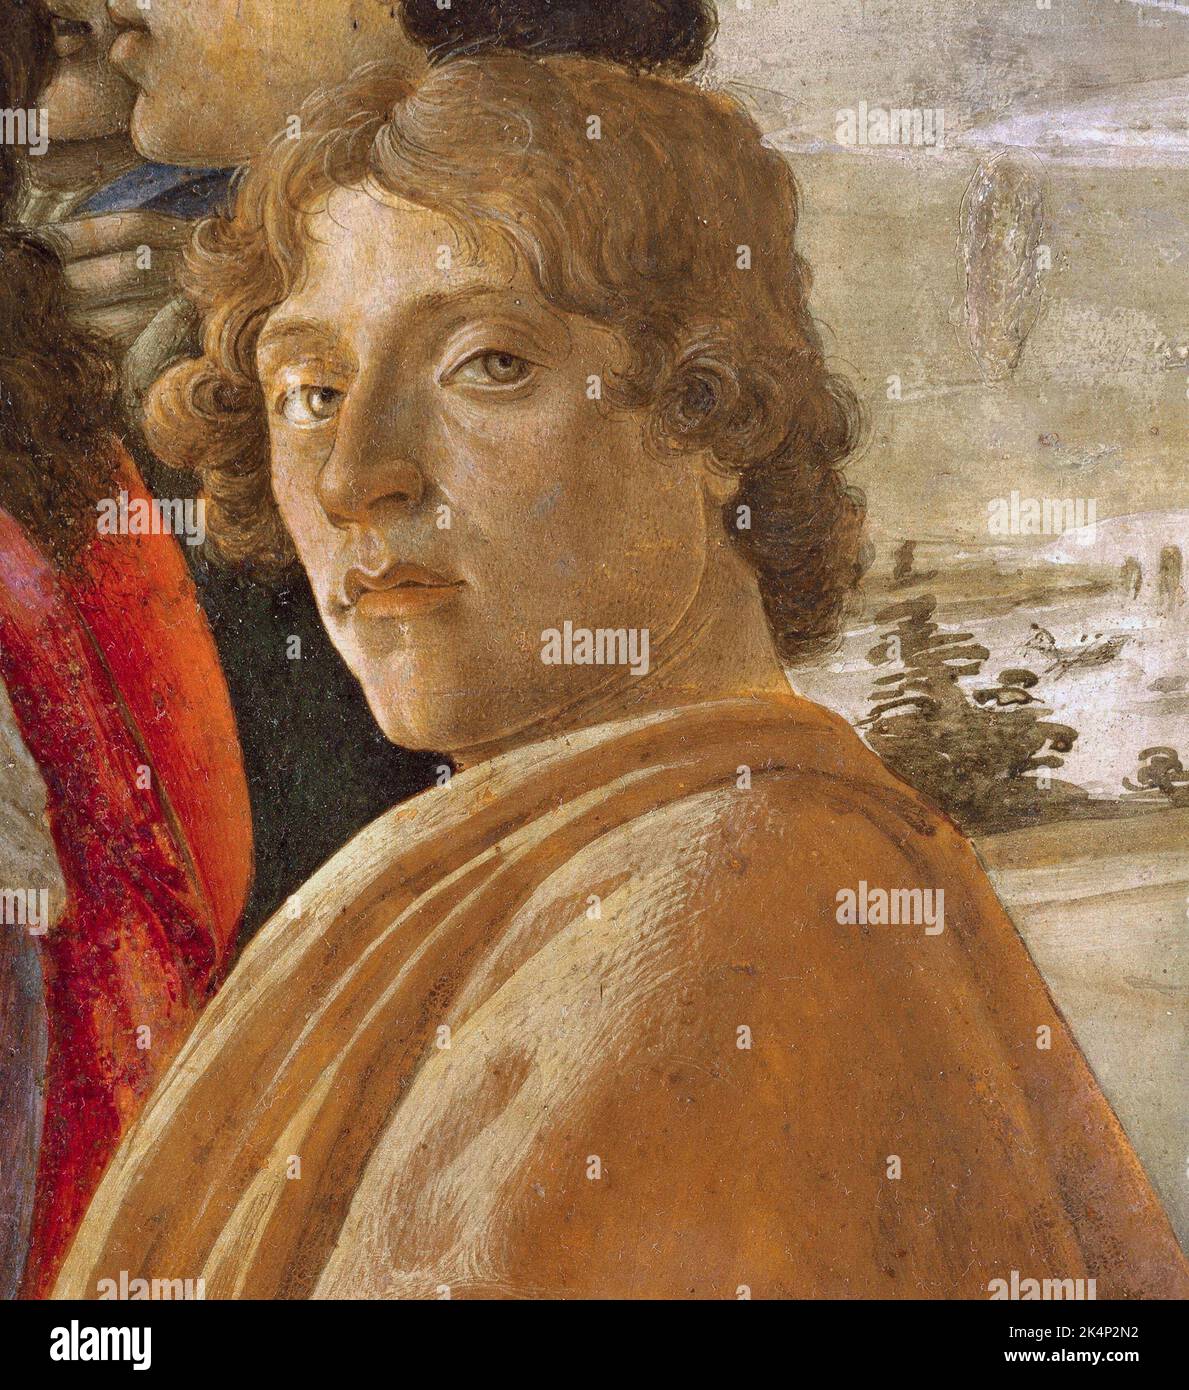 Botticelli, Alessandro di Mariano di Vanni Filipepi (c. 1445 – 1510), known as Sandro Botticelli, Italian painter of the Early Renaissance. Stock Photo